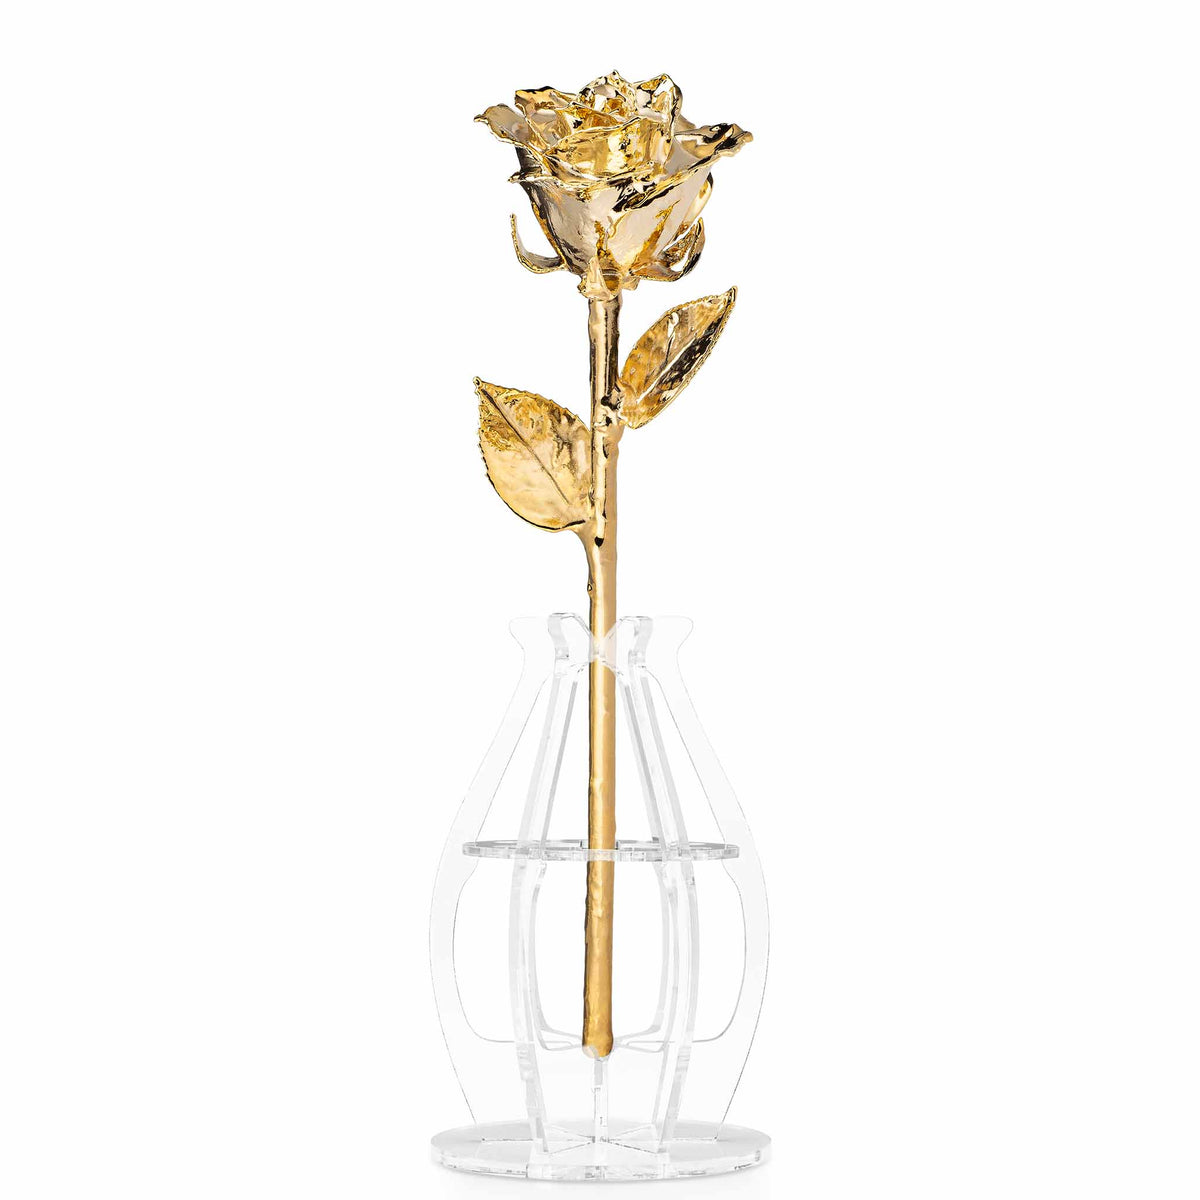 Forever Rose Phantom Vase (1-7 Roses)